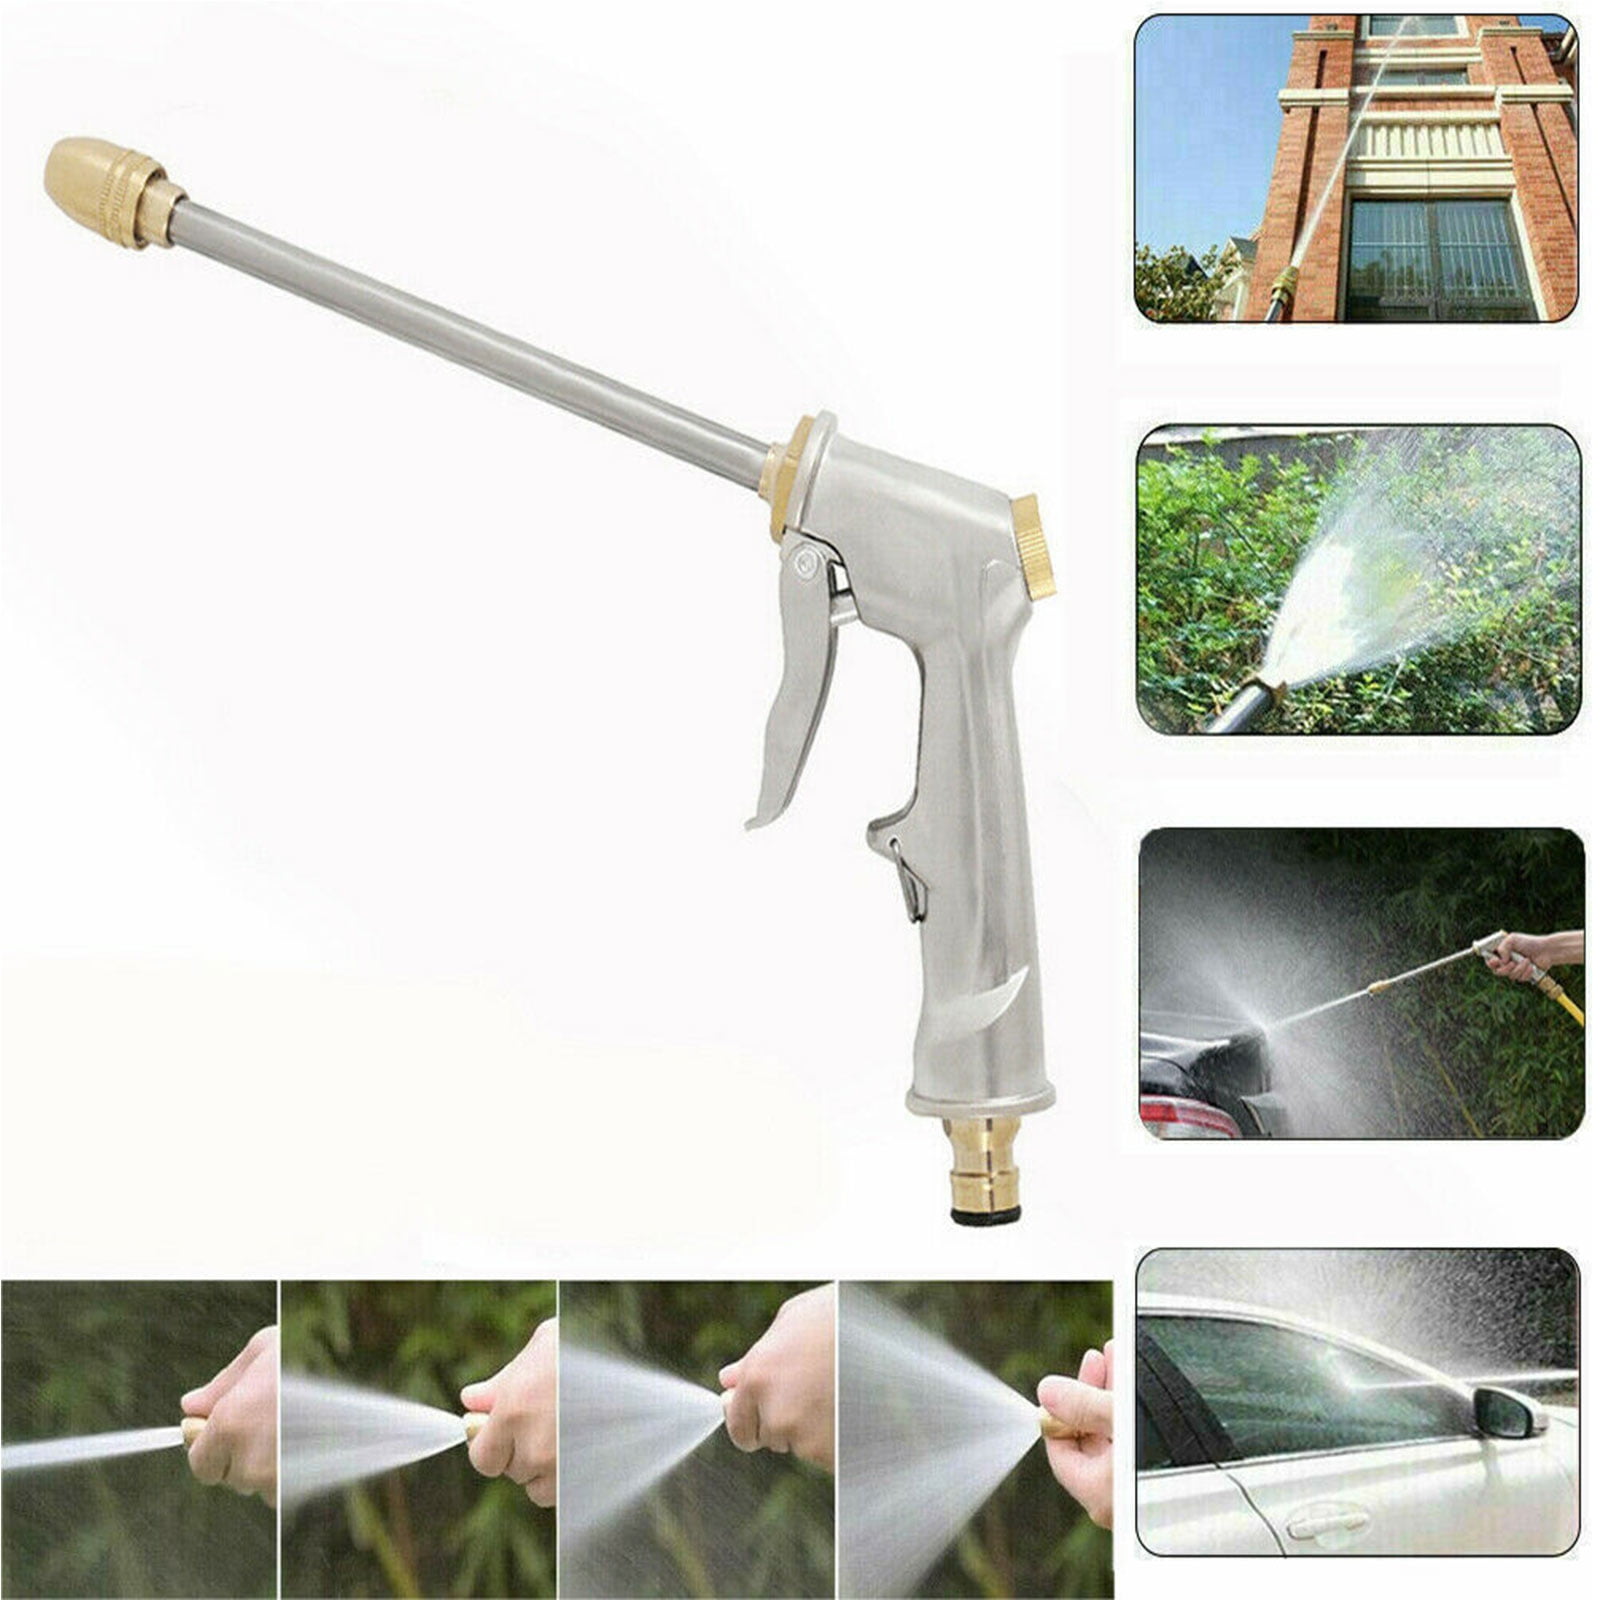 1x Water Spray Gun Garden Hose Nozzle Spray Gun Car Cleaner Water Pistol Sprayer 